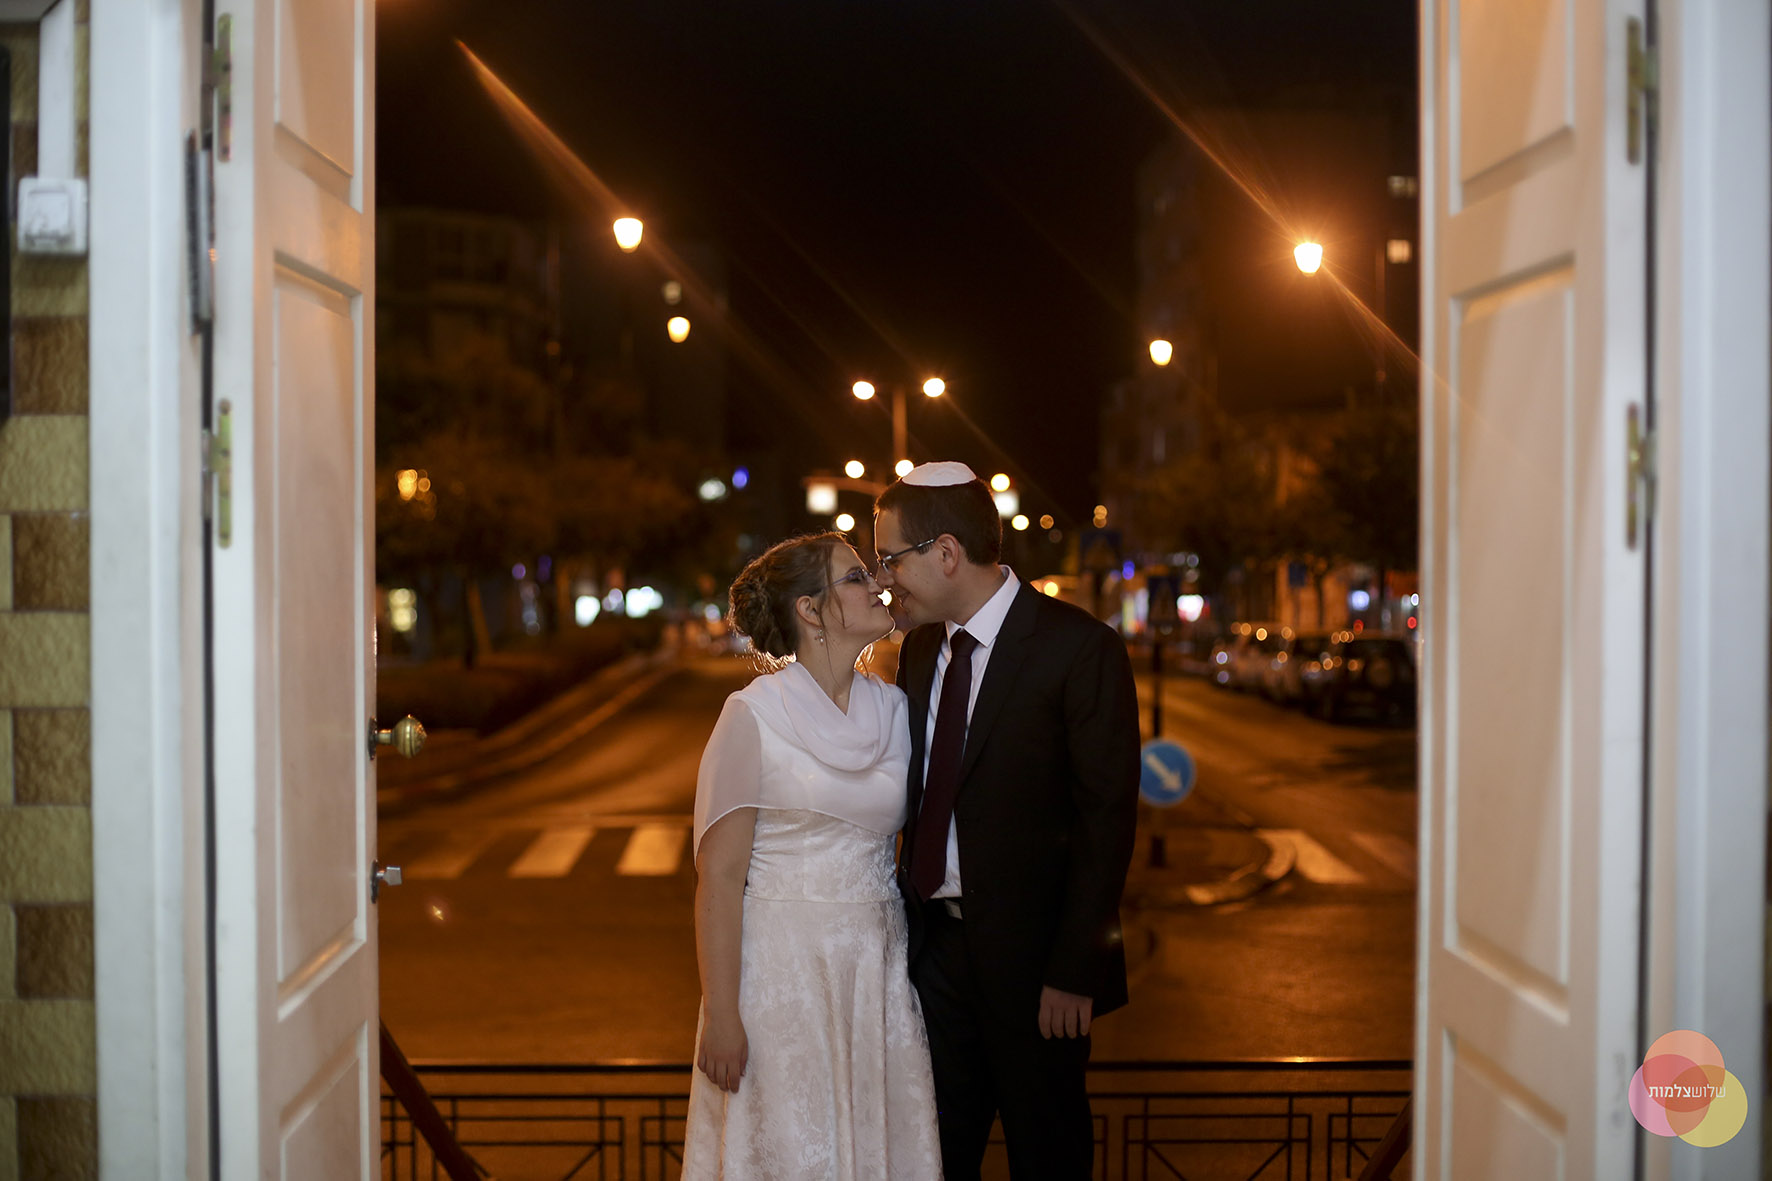 זוג מתחתן בבית הכנסת הגדול. למצולמים אין קשר לכתבה. צילום חופית שלוש צלמות